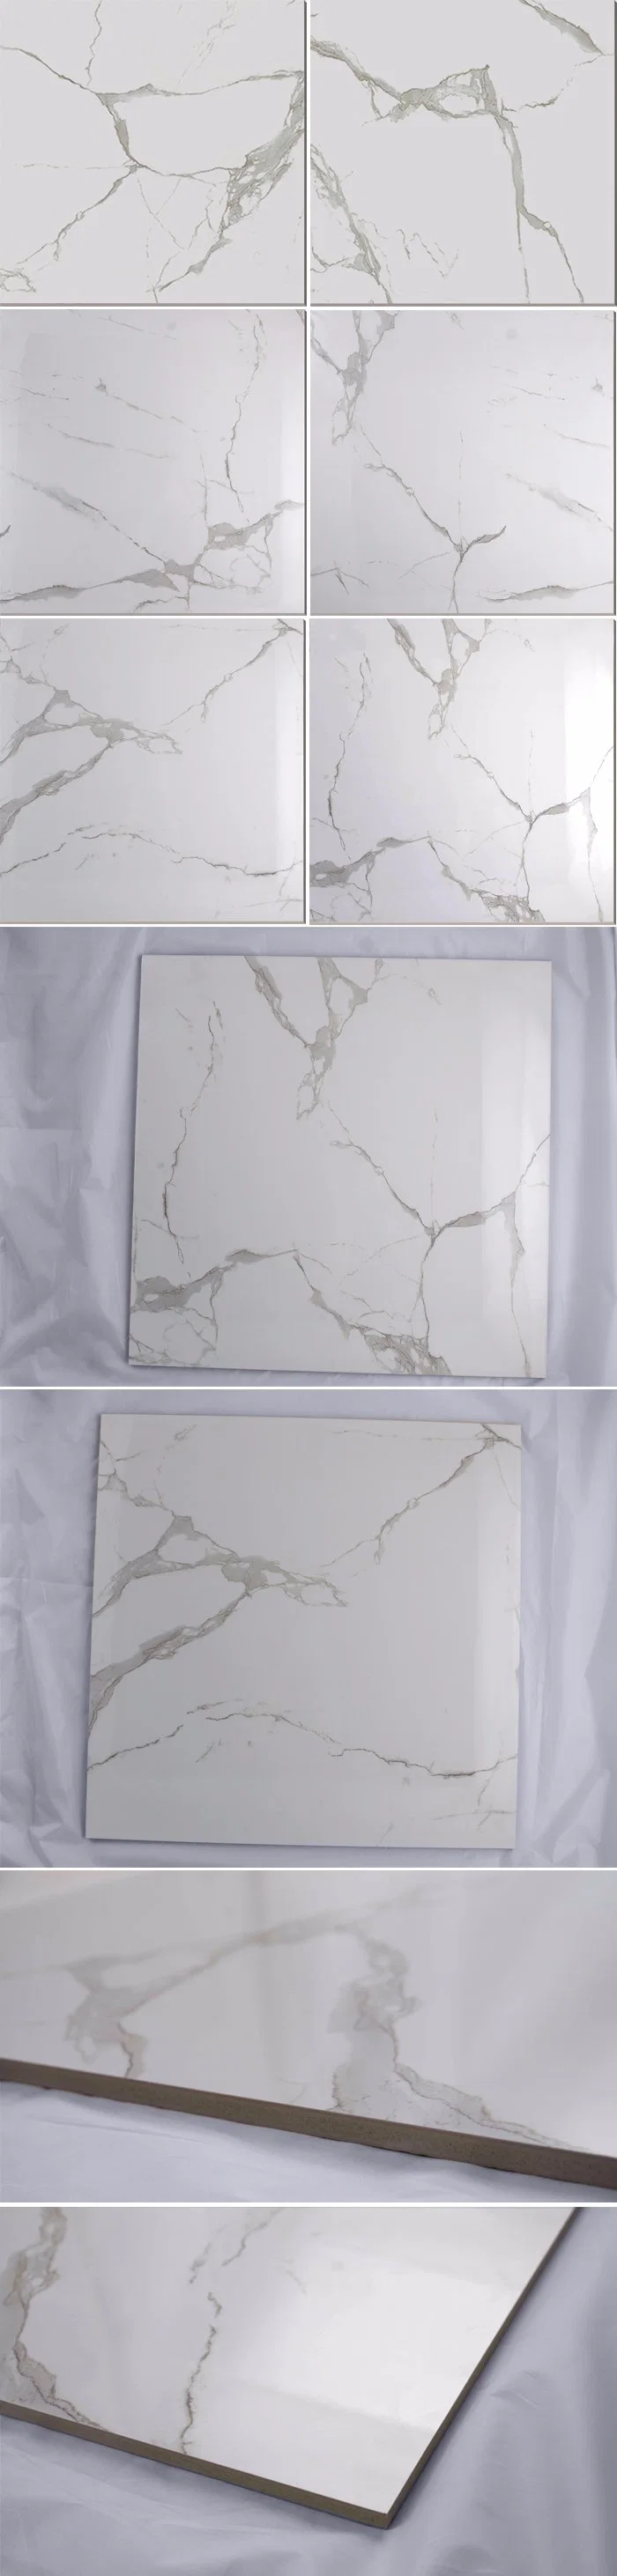 Foshan Manufactures Porcelain High Gloss Floor Super White Tile